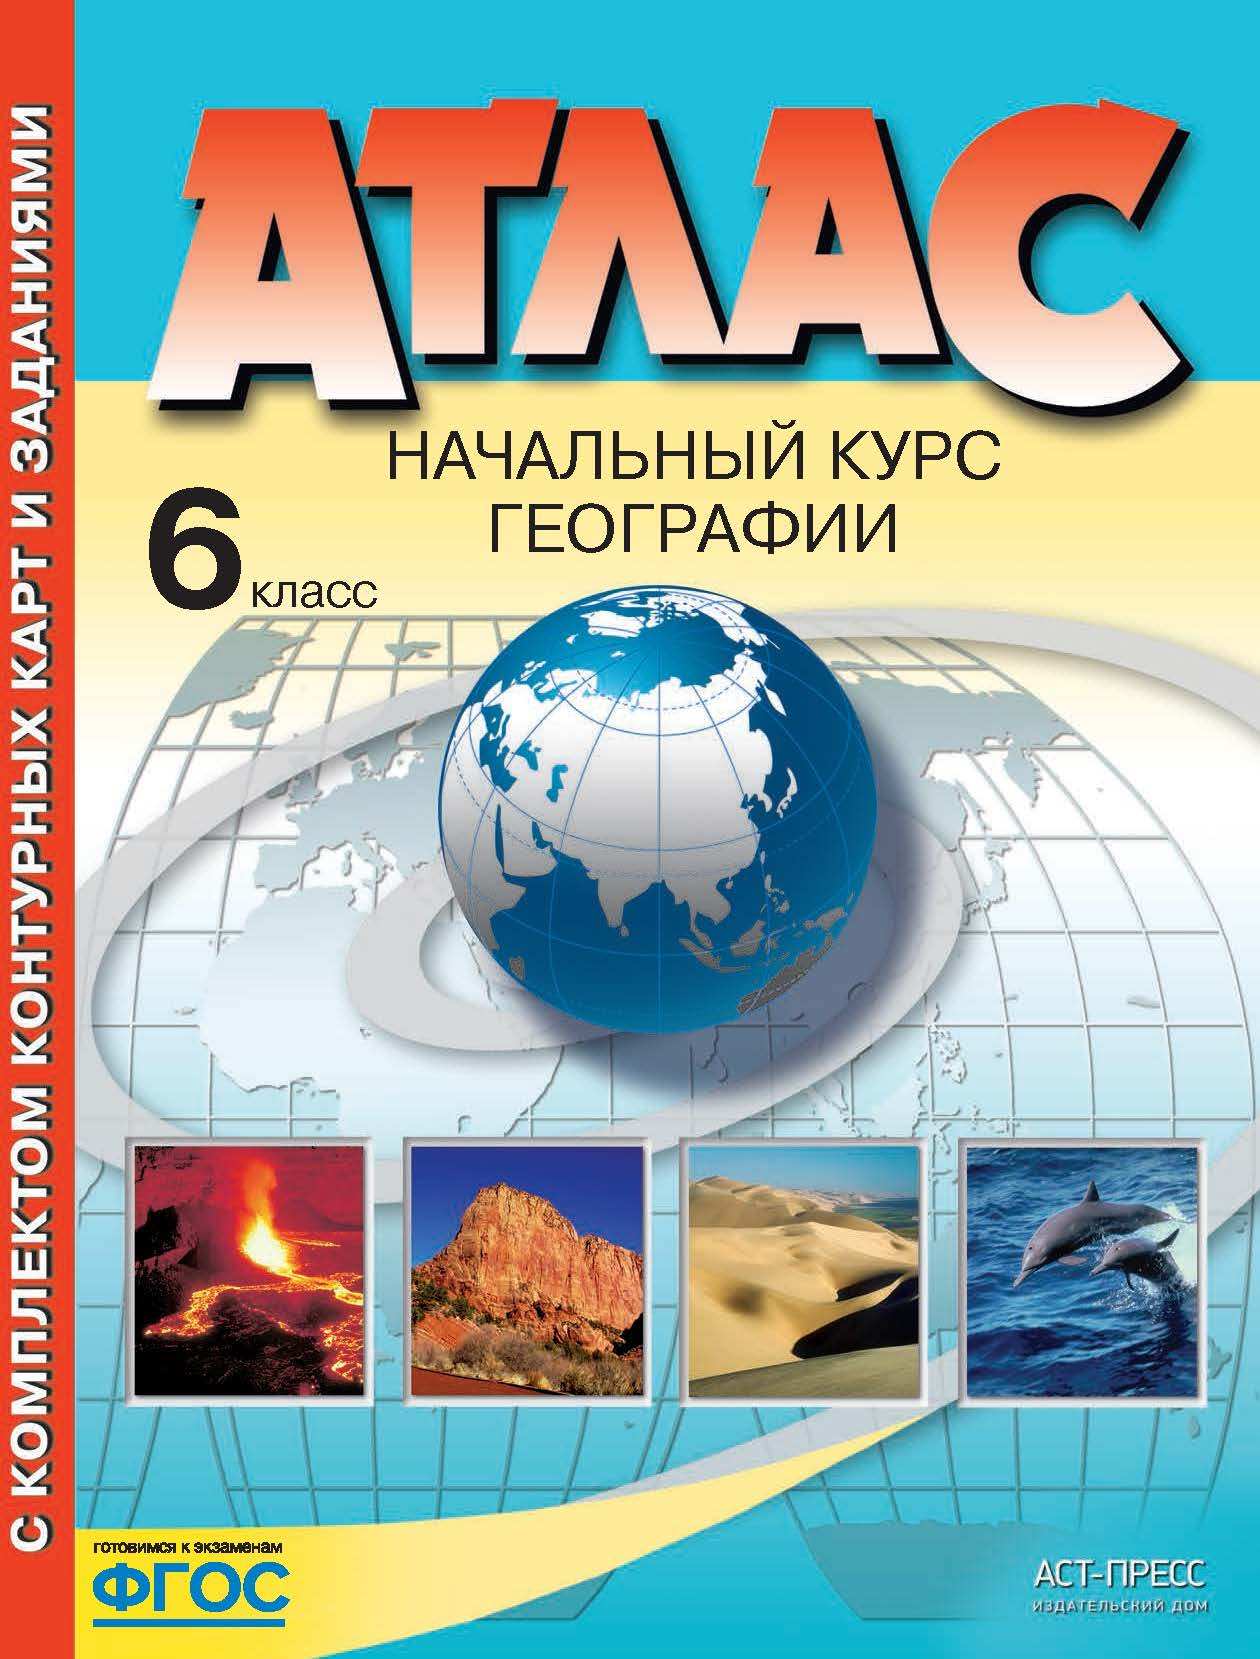 Атлас География 6 класс Начальный курс с комплектом контурных карт "АСТ-ПРЕСС"